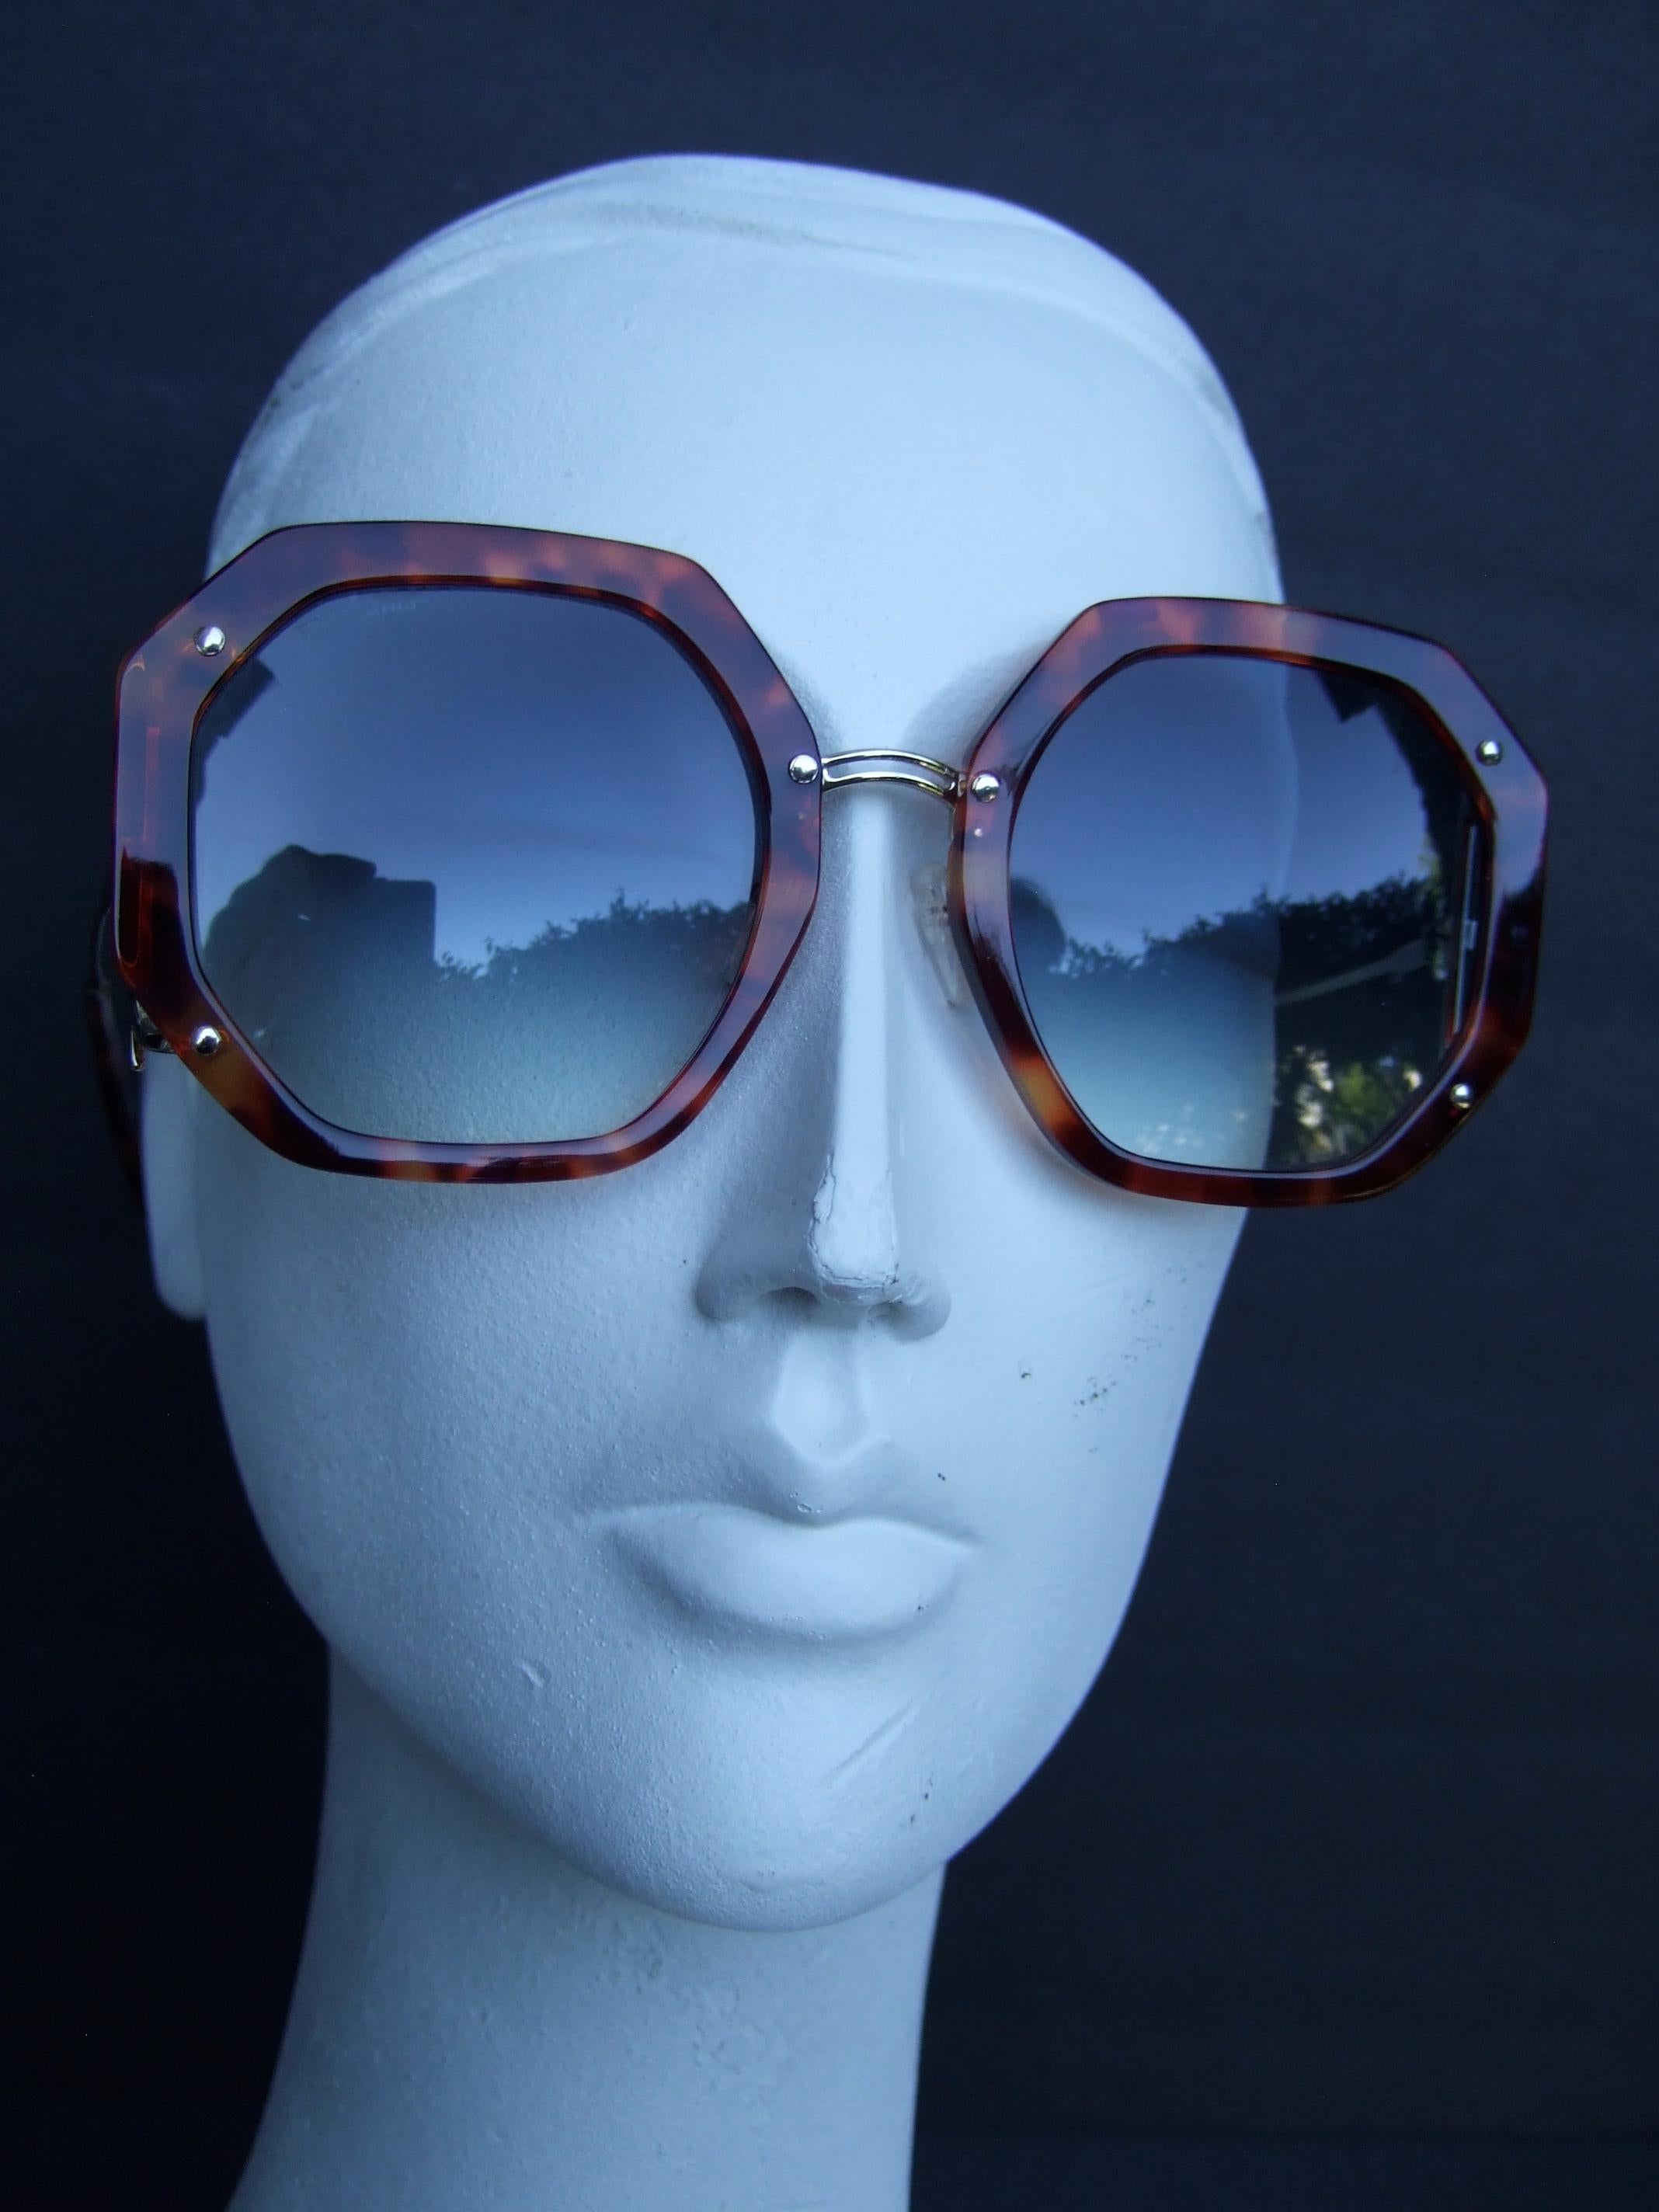 Salvatore Ferragamo Italian Women's Tortoise Shell Sunglasses in Box c 21st c  For Sale 5